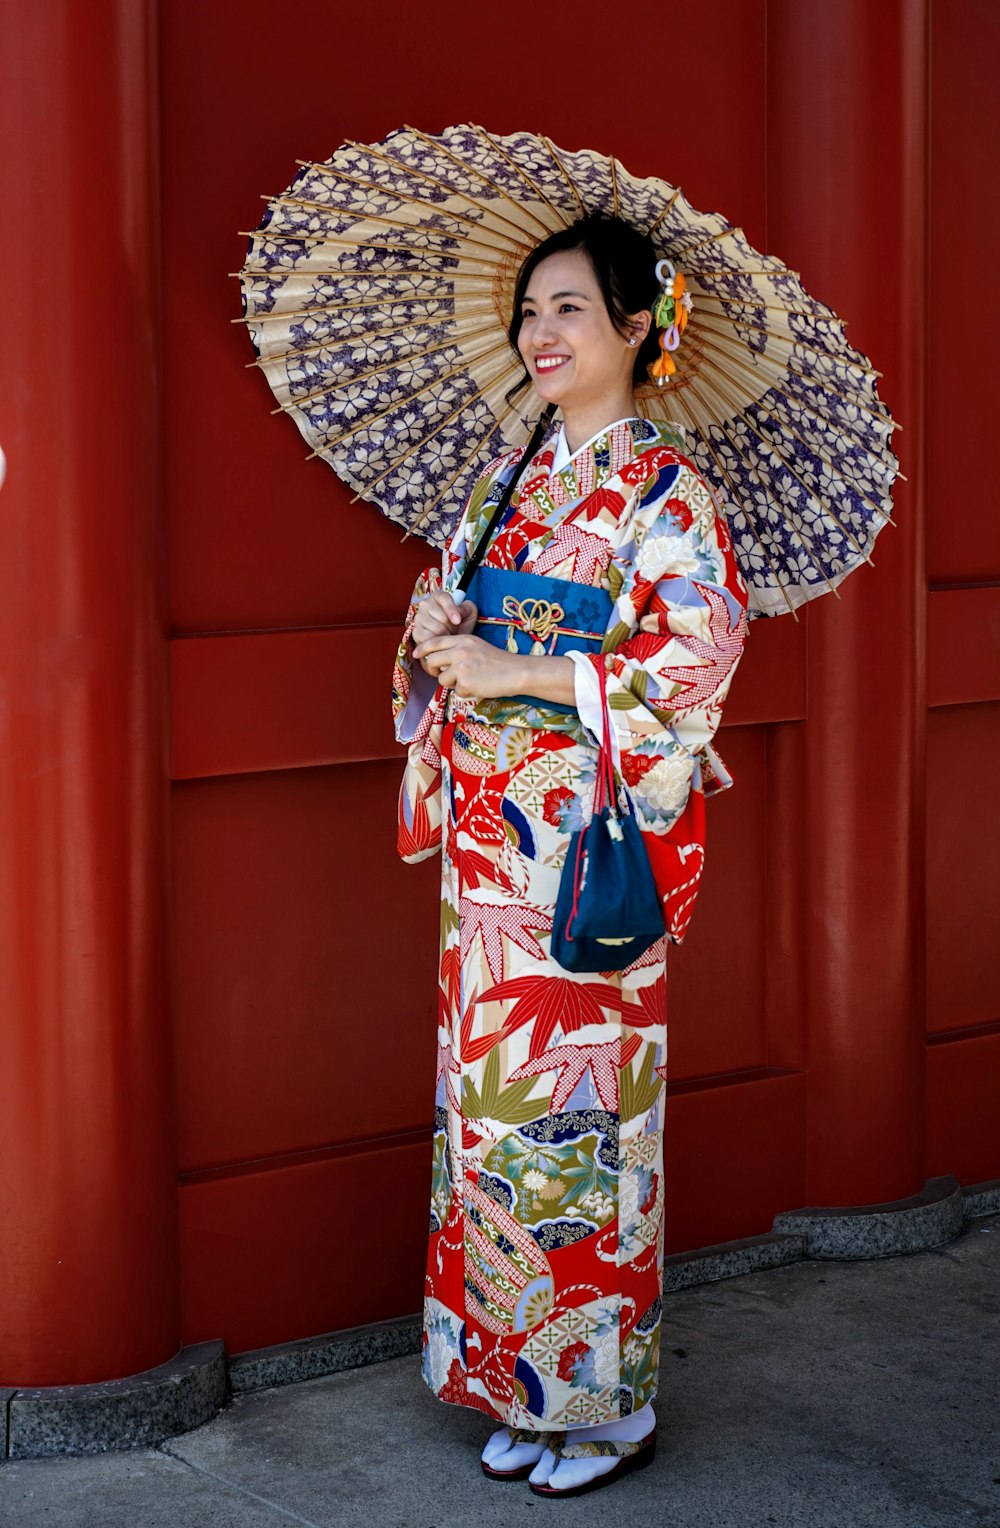 Frau im rot-weißen und blauen Kimono in der Nähe der roten Wand